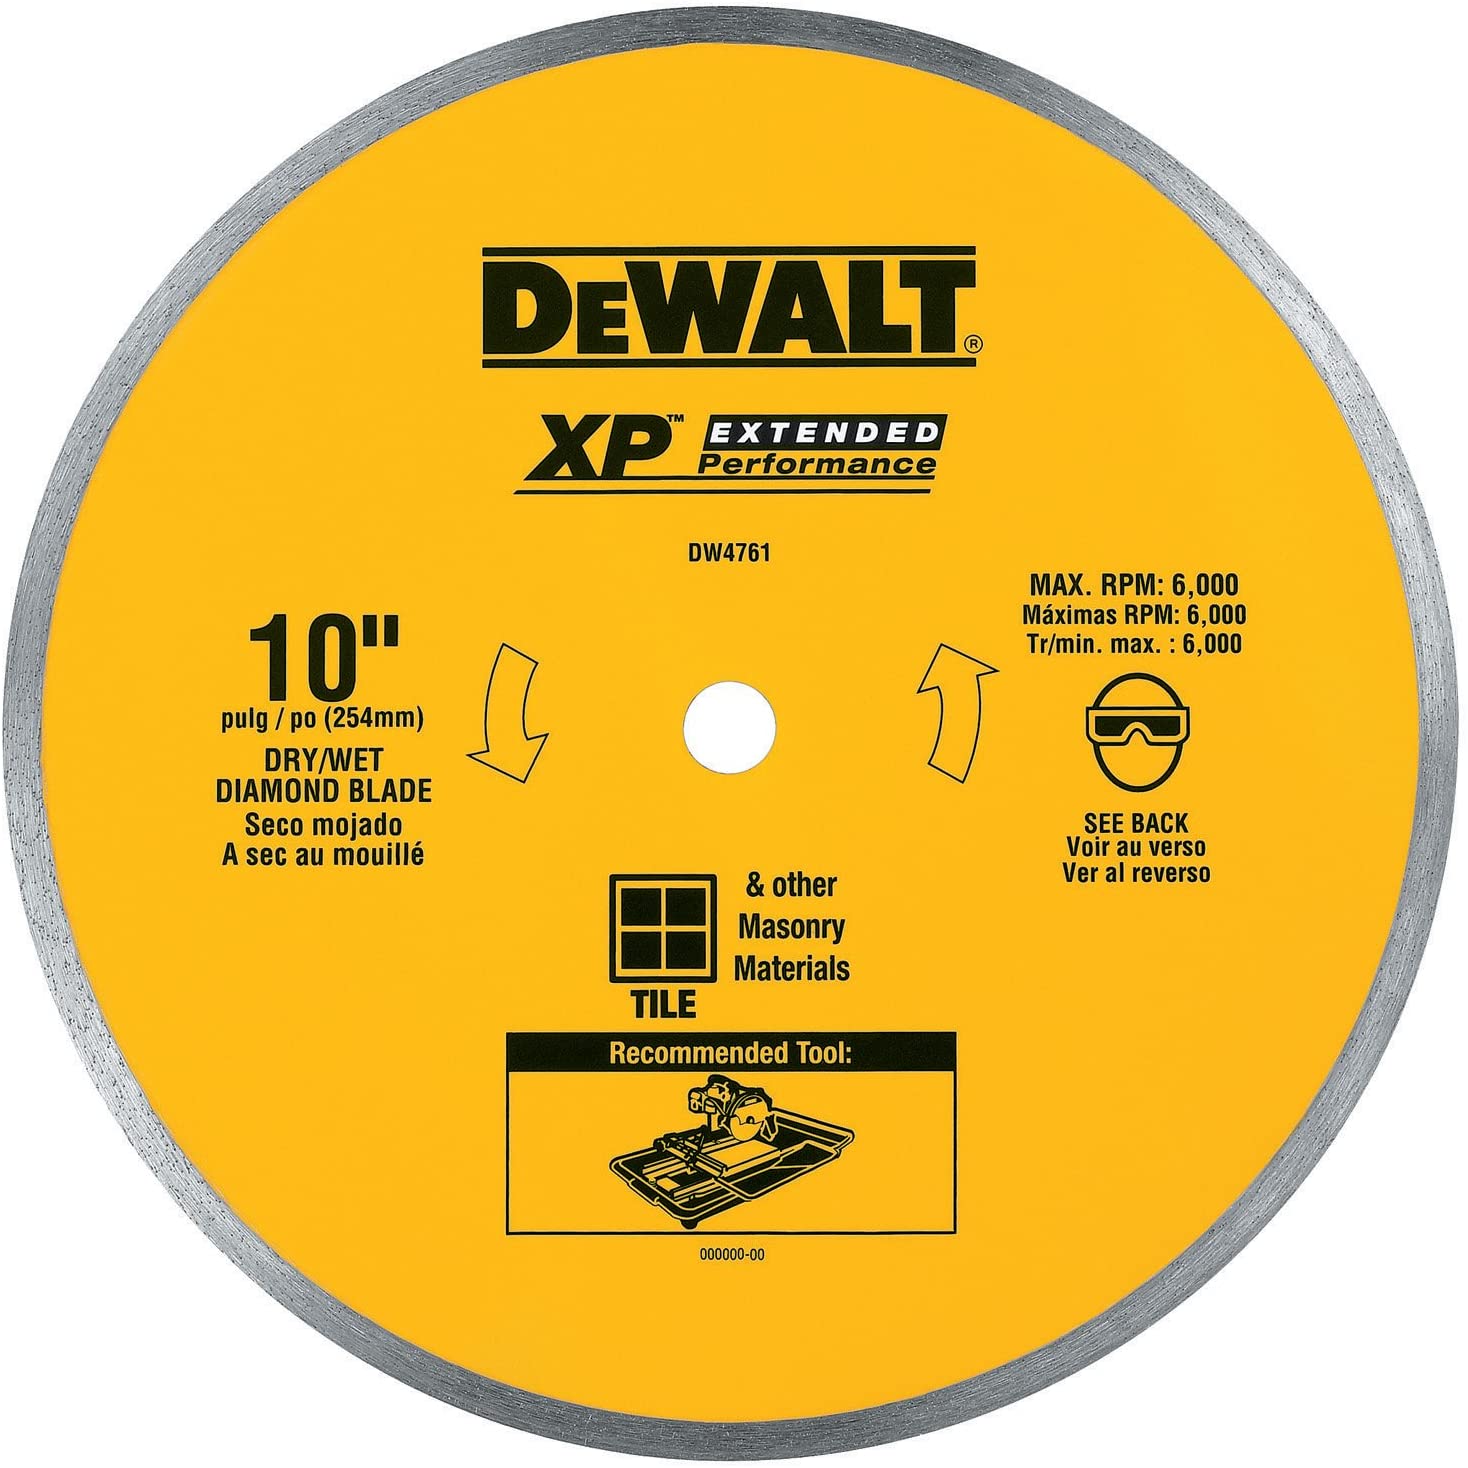 DEWALT Diamond Blade For Ceramic Or Tile, Wet Cutting, Continuous Rim, 5/8-Inch Arbor, 10-Inch